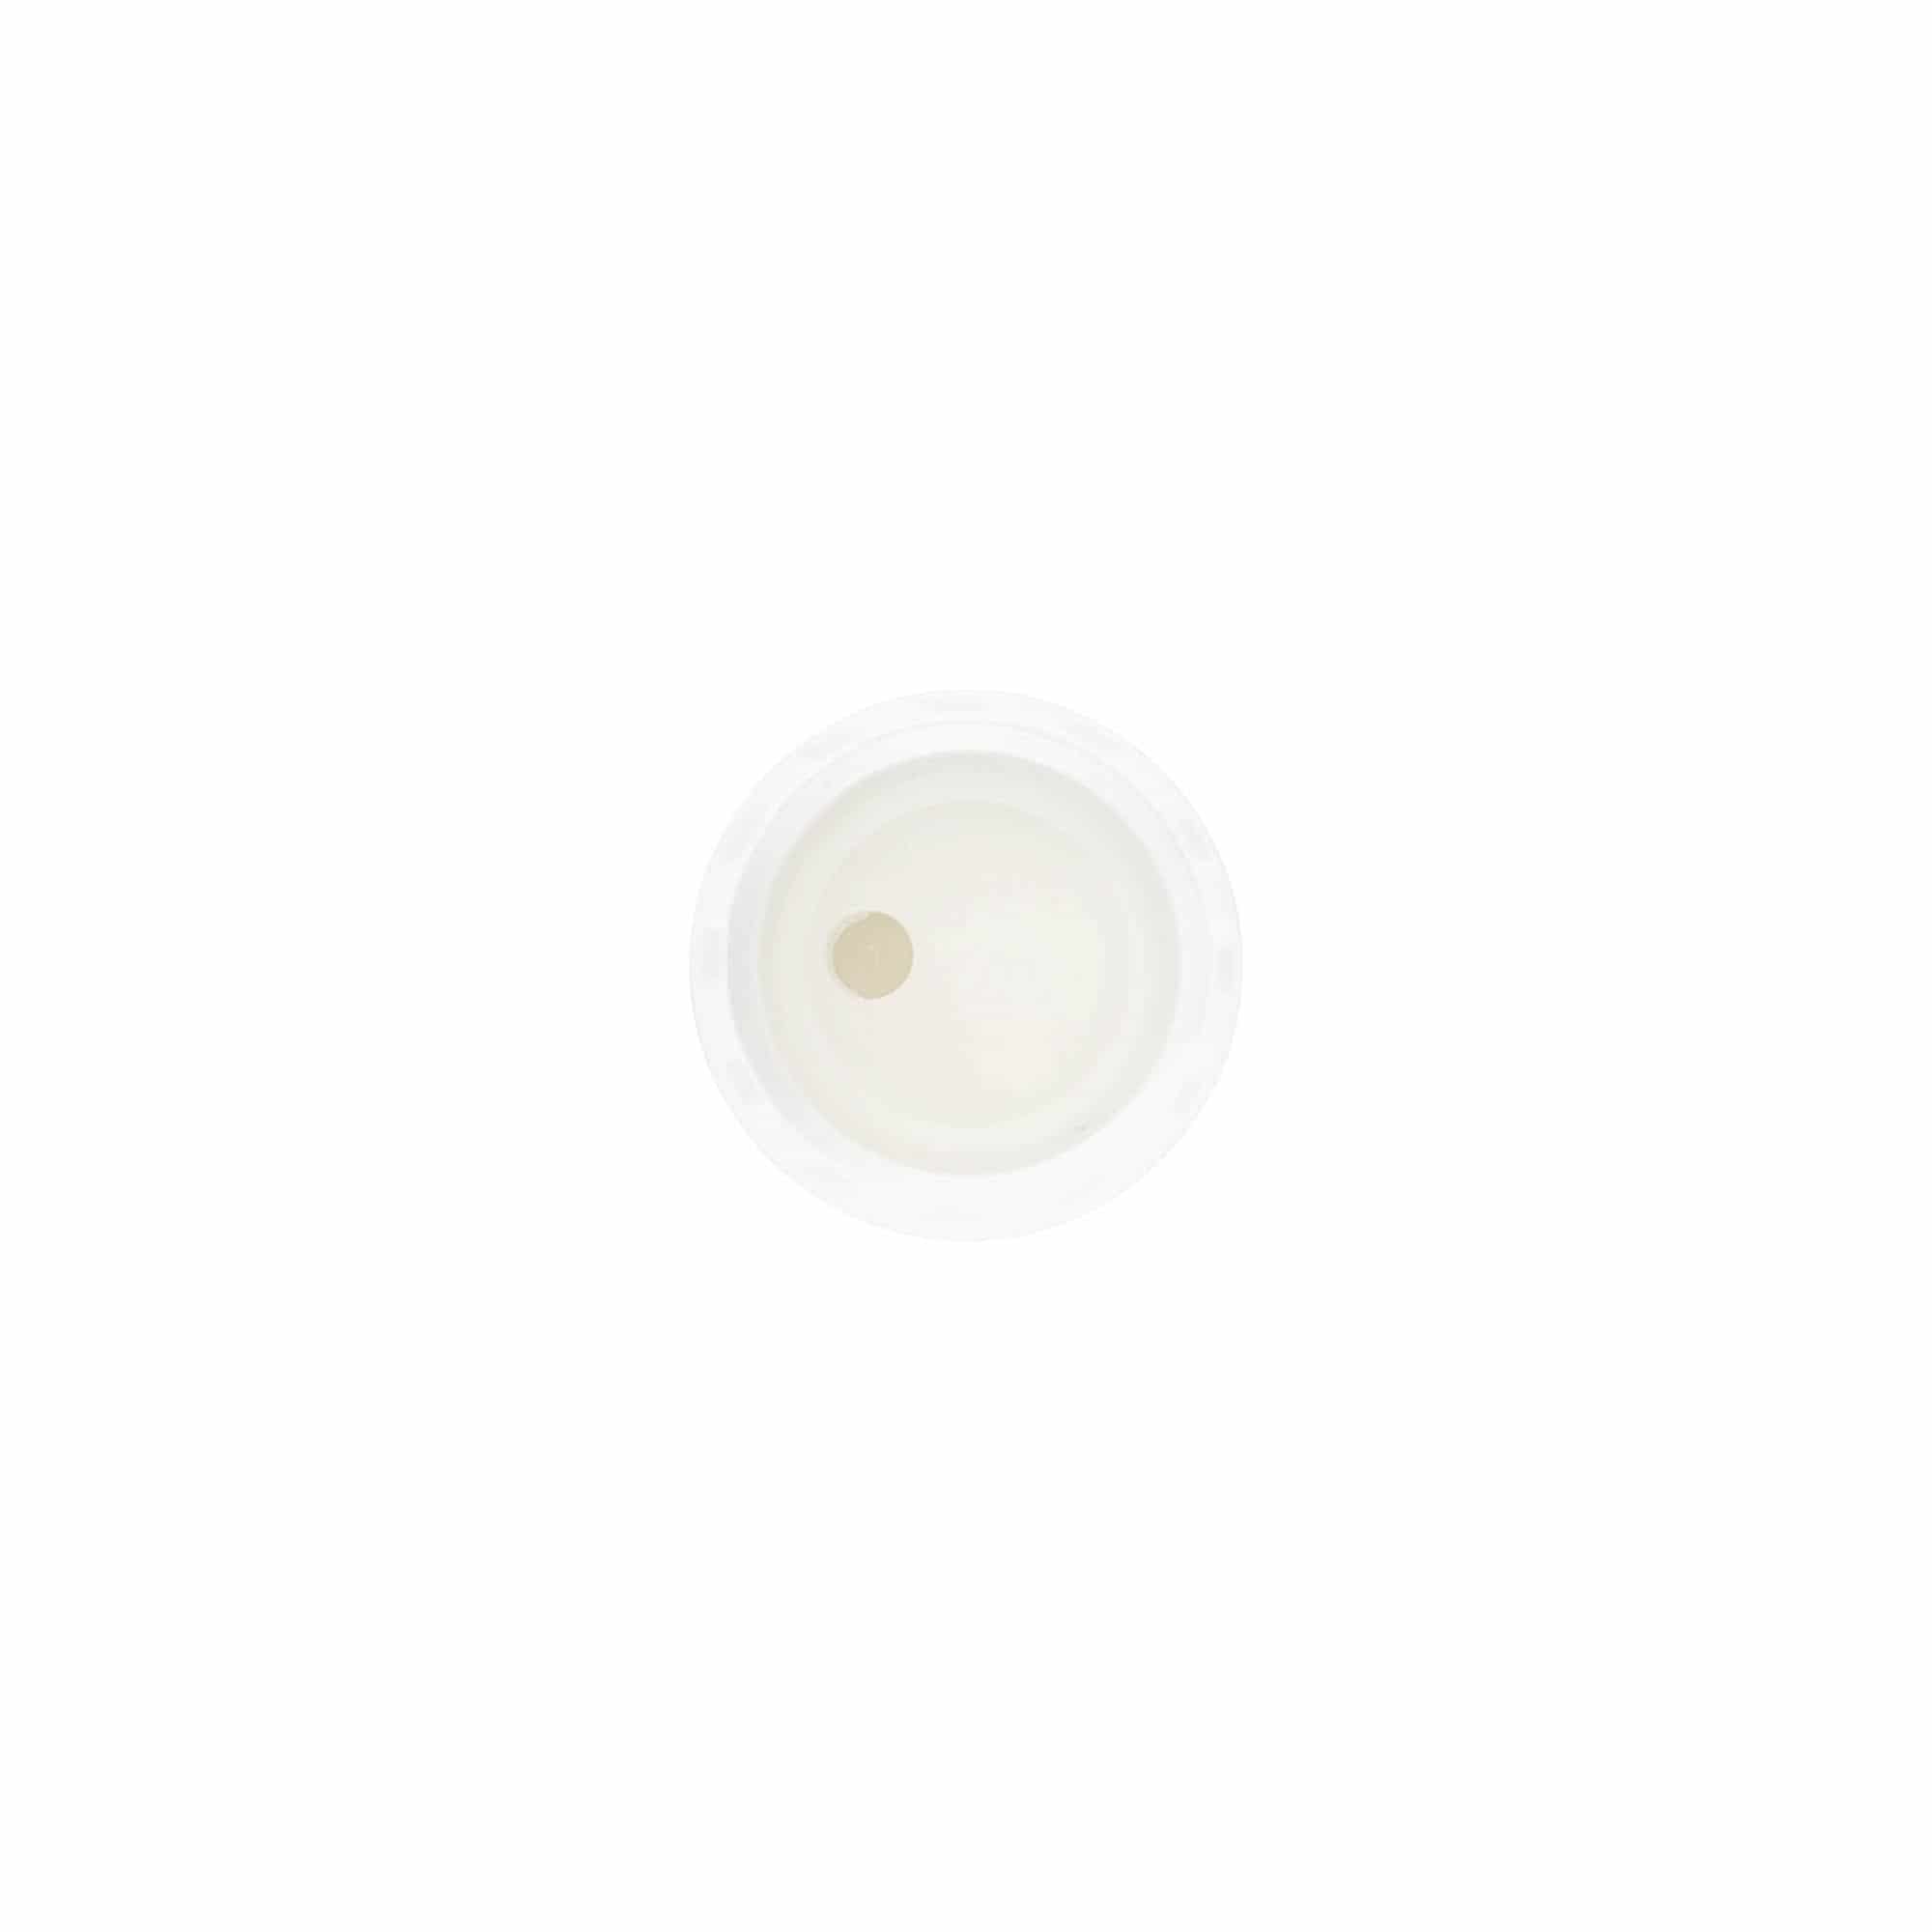 Zakrętka Disc Top, tworzywo sztuczne PP, kolor biały, do zamknięcia: GPI 20/410